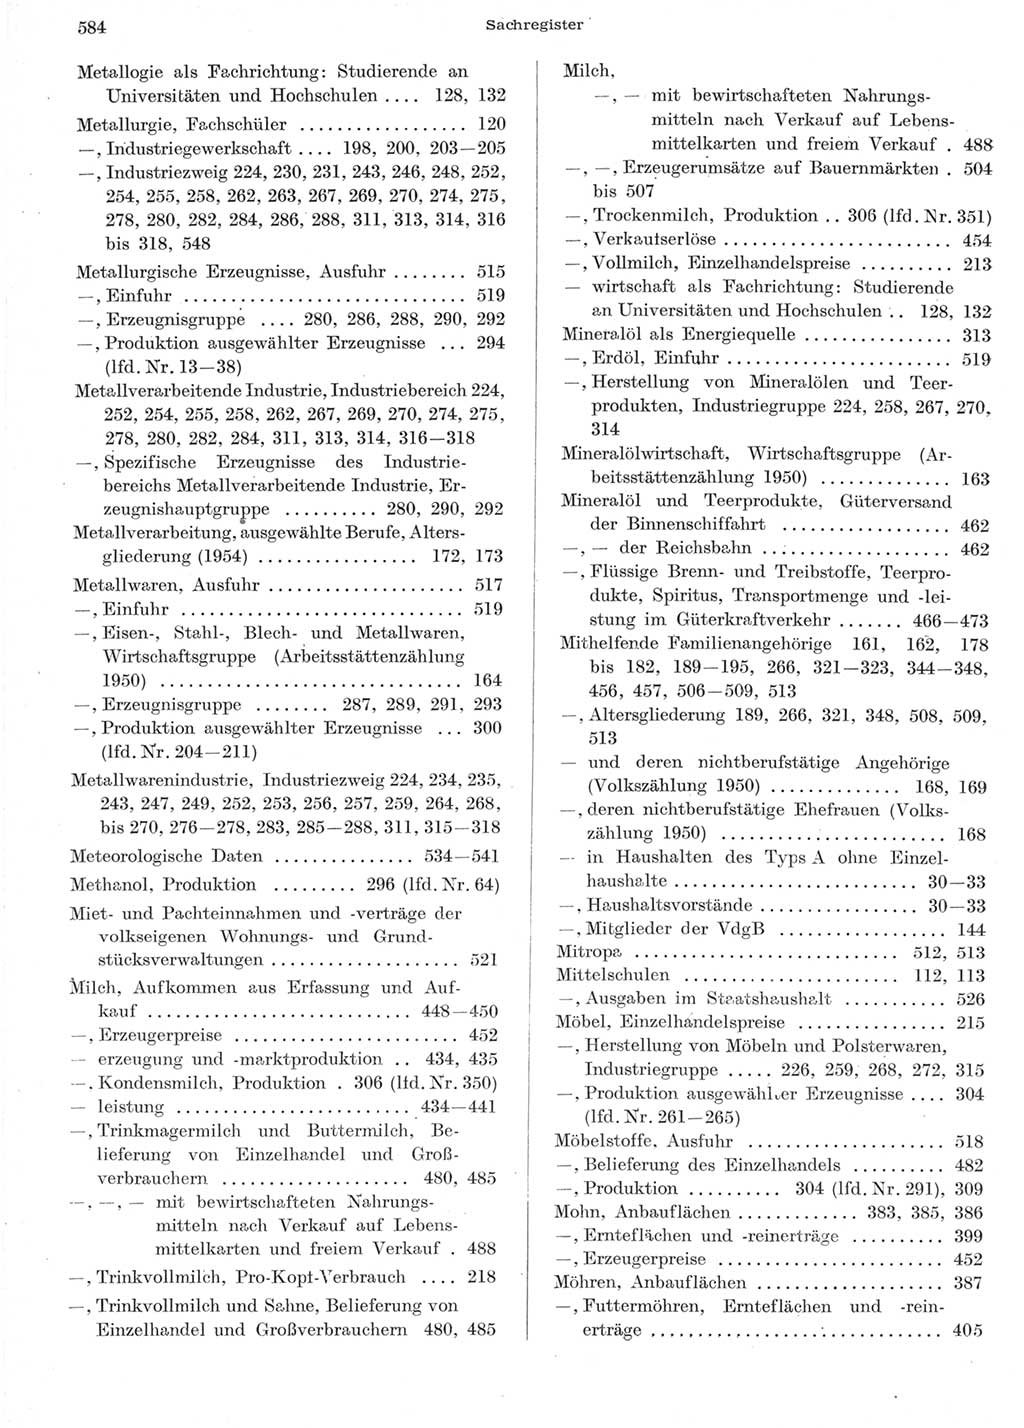 Statistisches Jahrbuch der Deutschen Demokratischen Republik (DDR) 1957, Seite 584 (Stat. Jb. DDR 1957, S. 584)